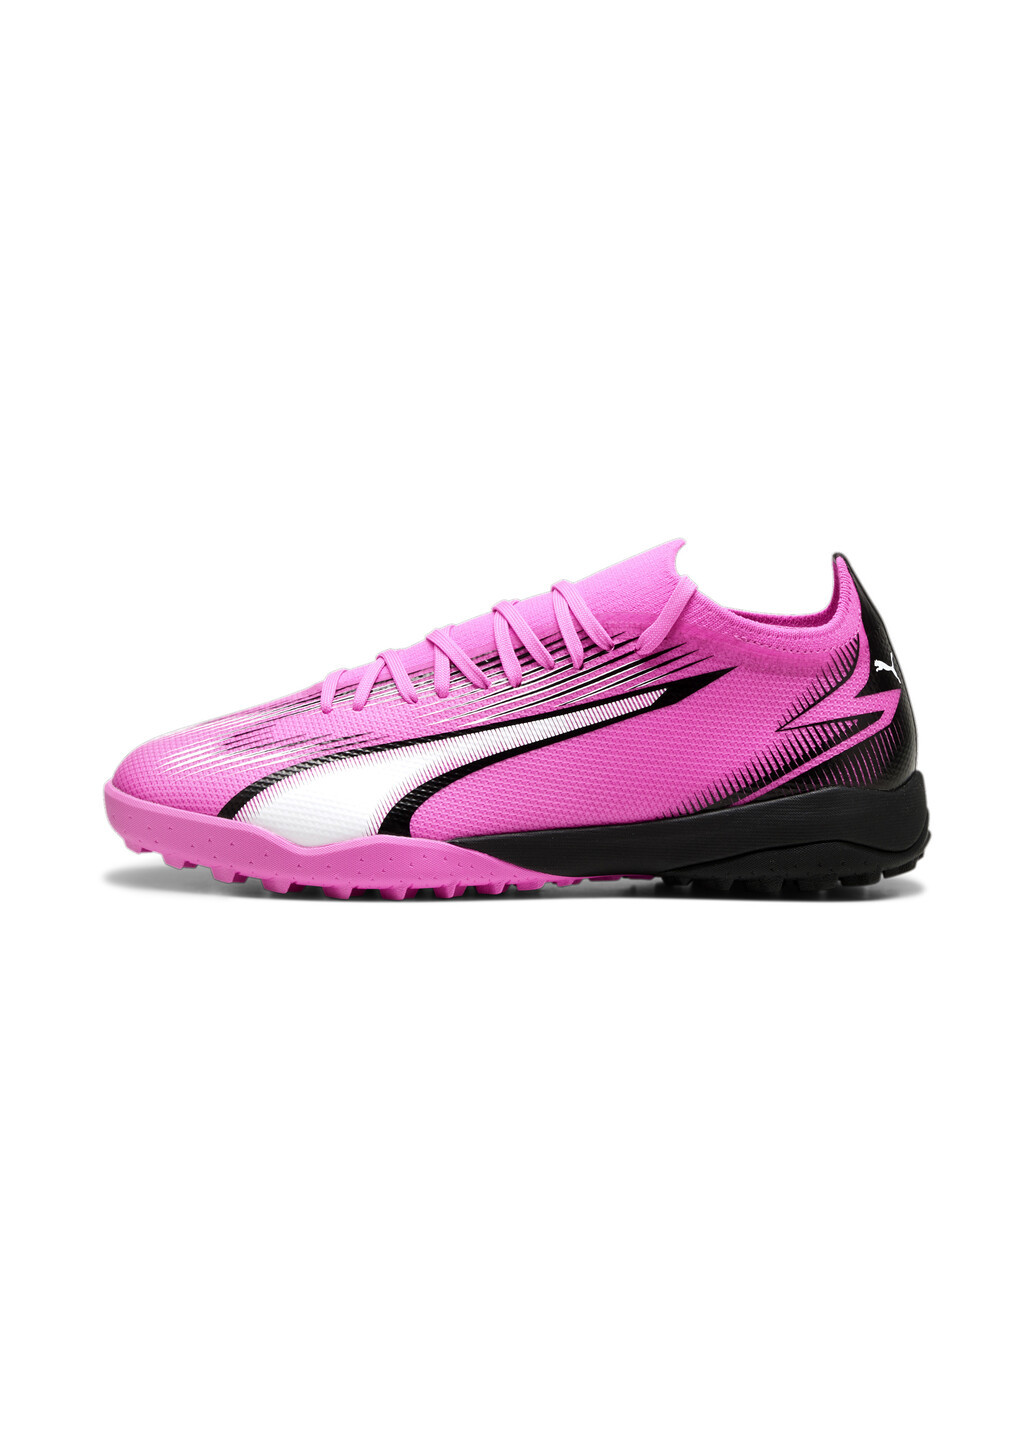 Розовые бутсы ultra match tt football boots Puma